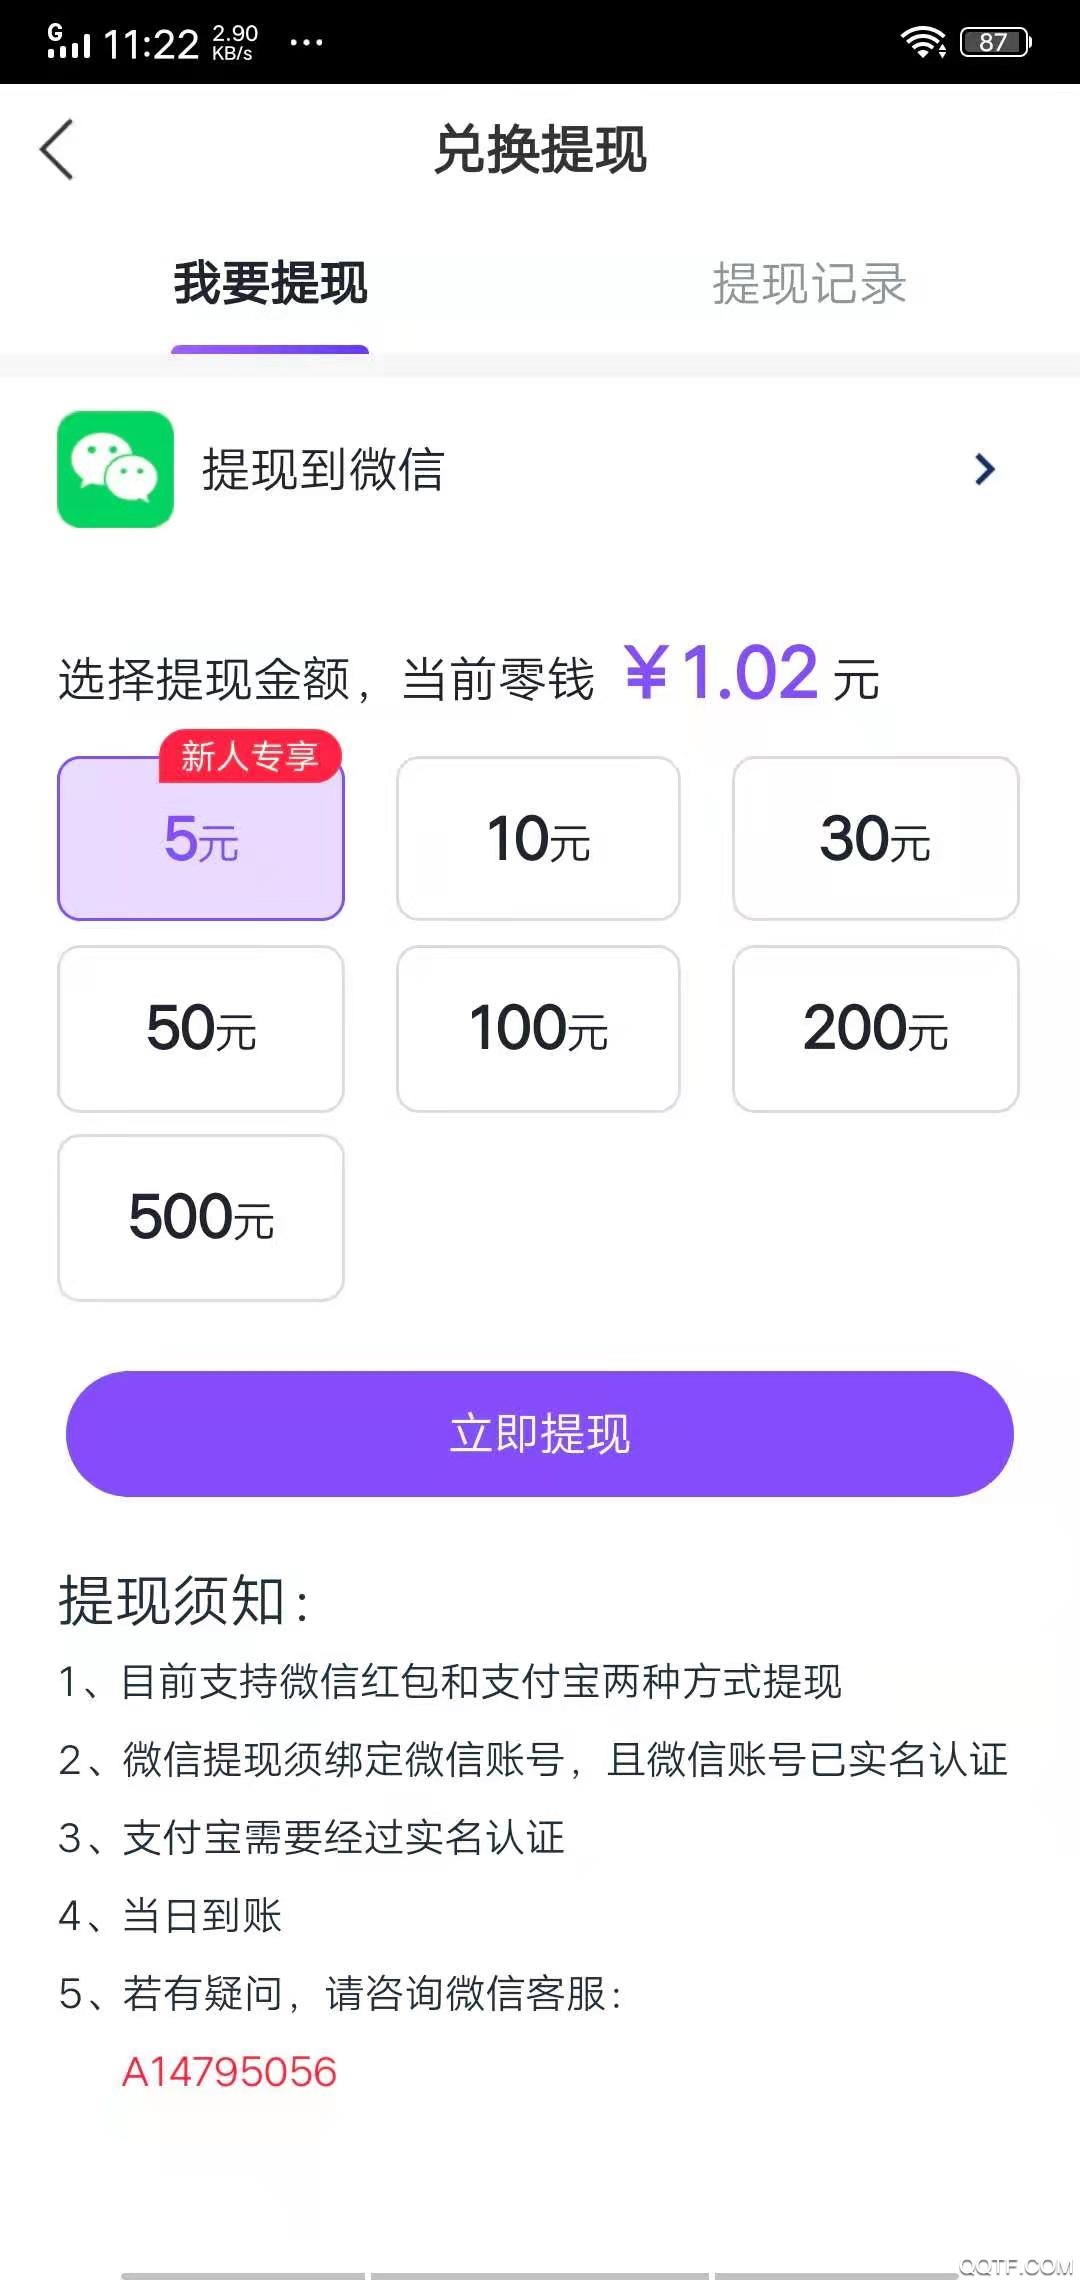 金马快讯app转发文章赚钱平台